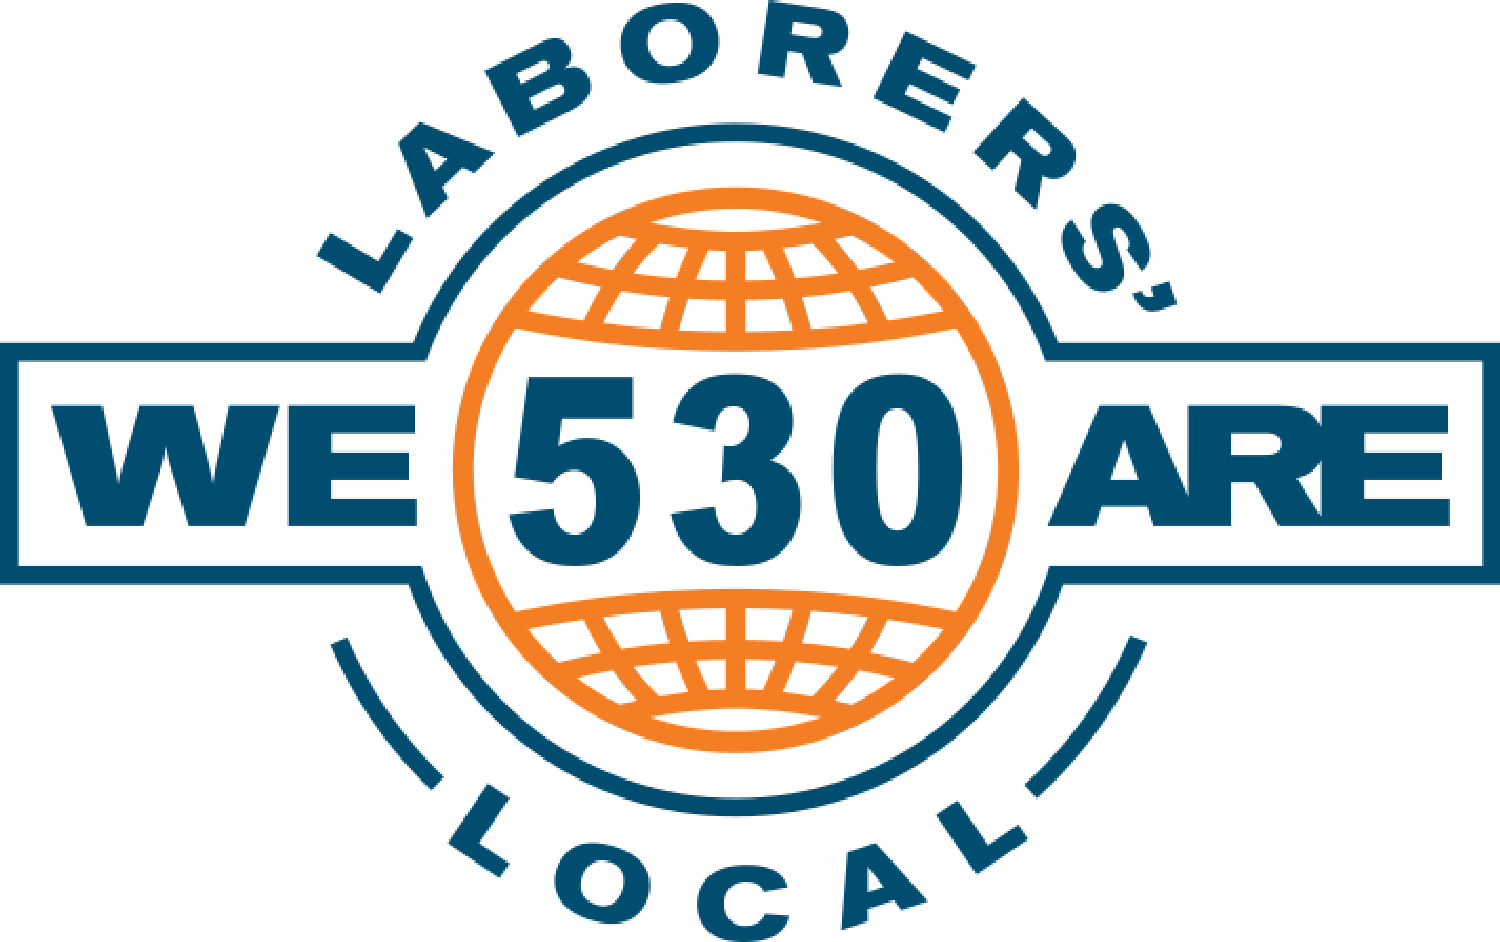 Laborers’ Local 530